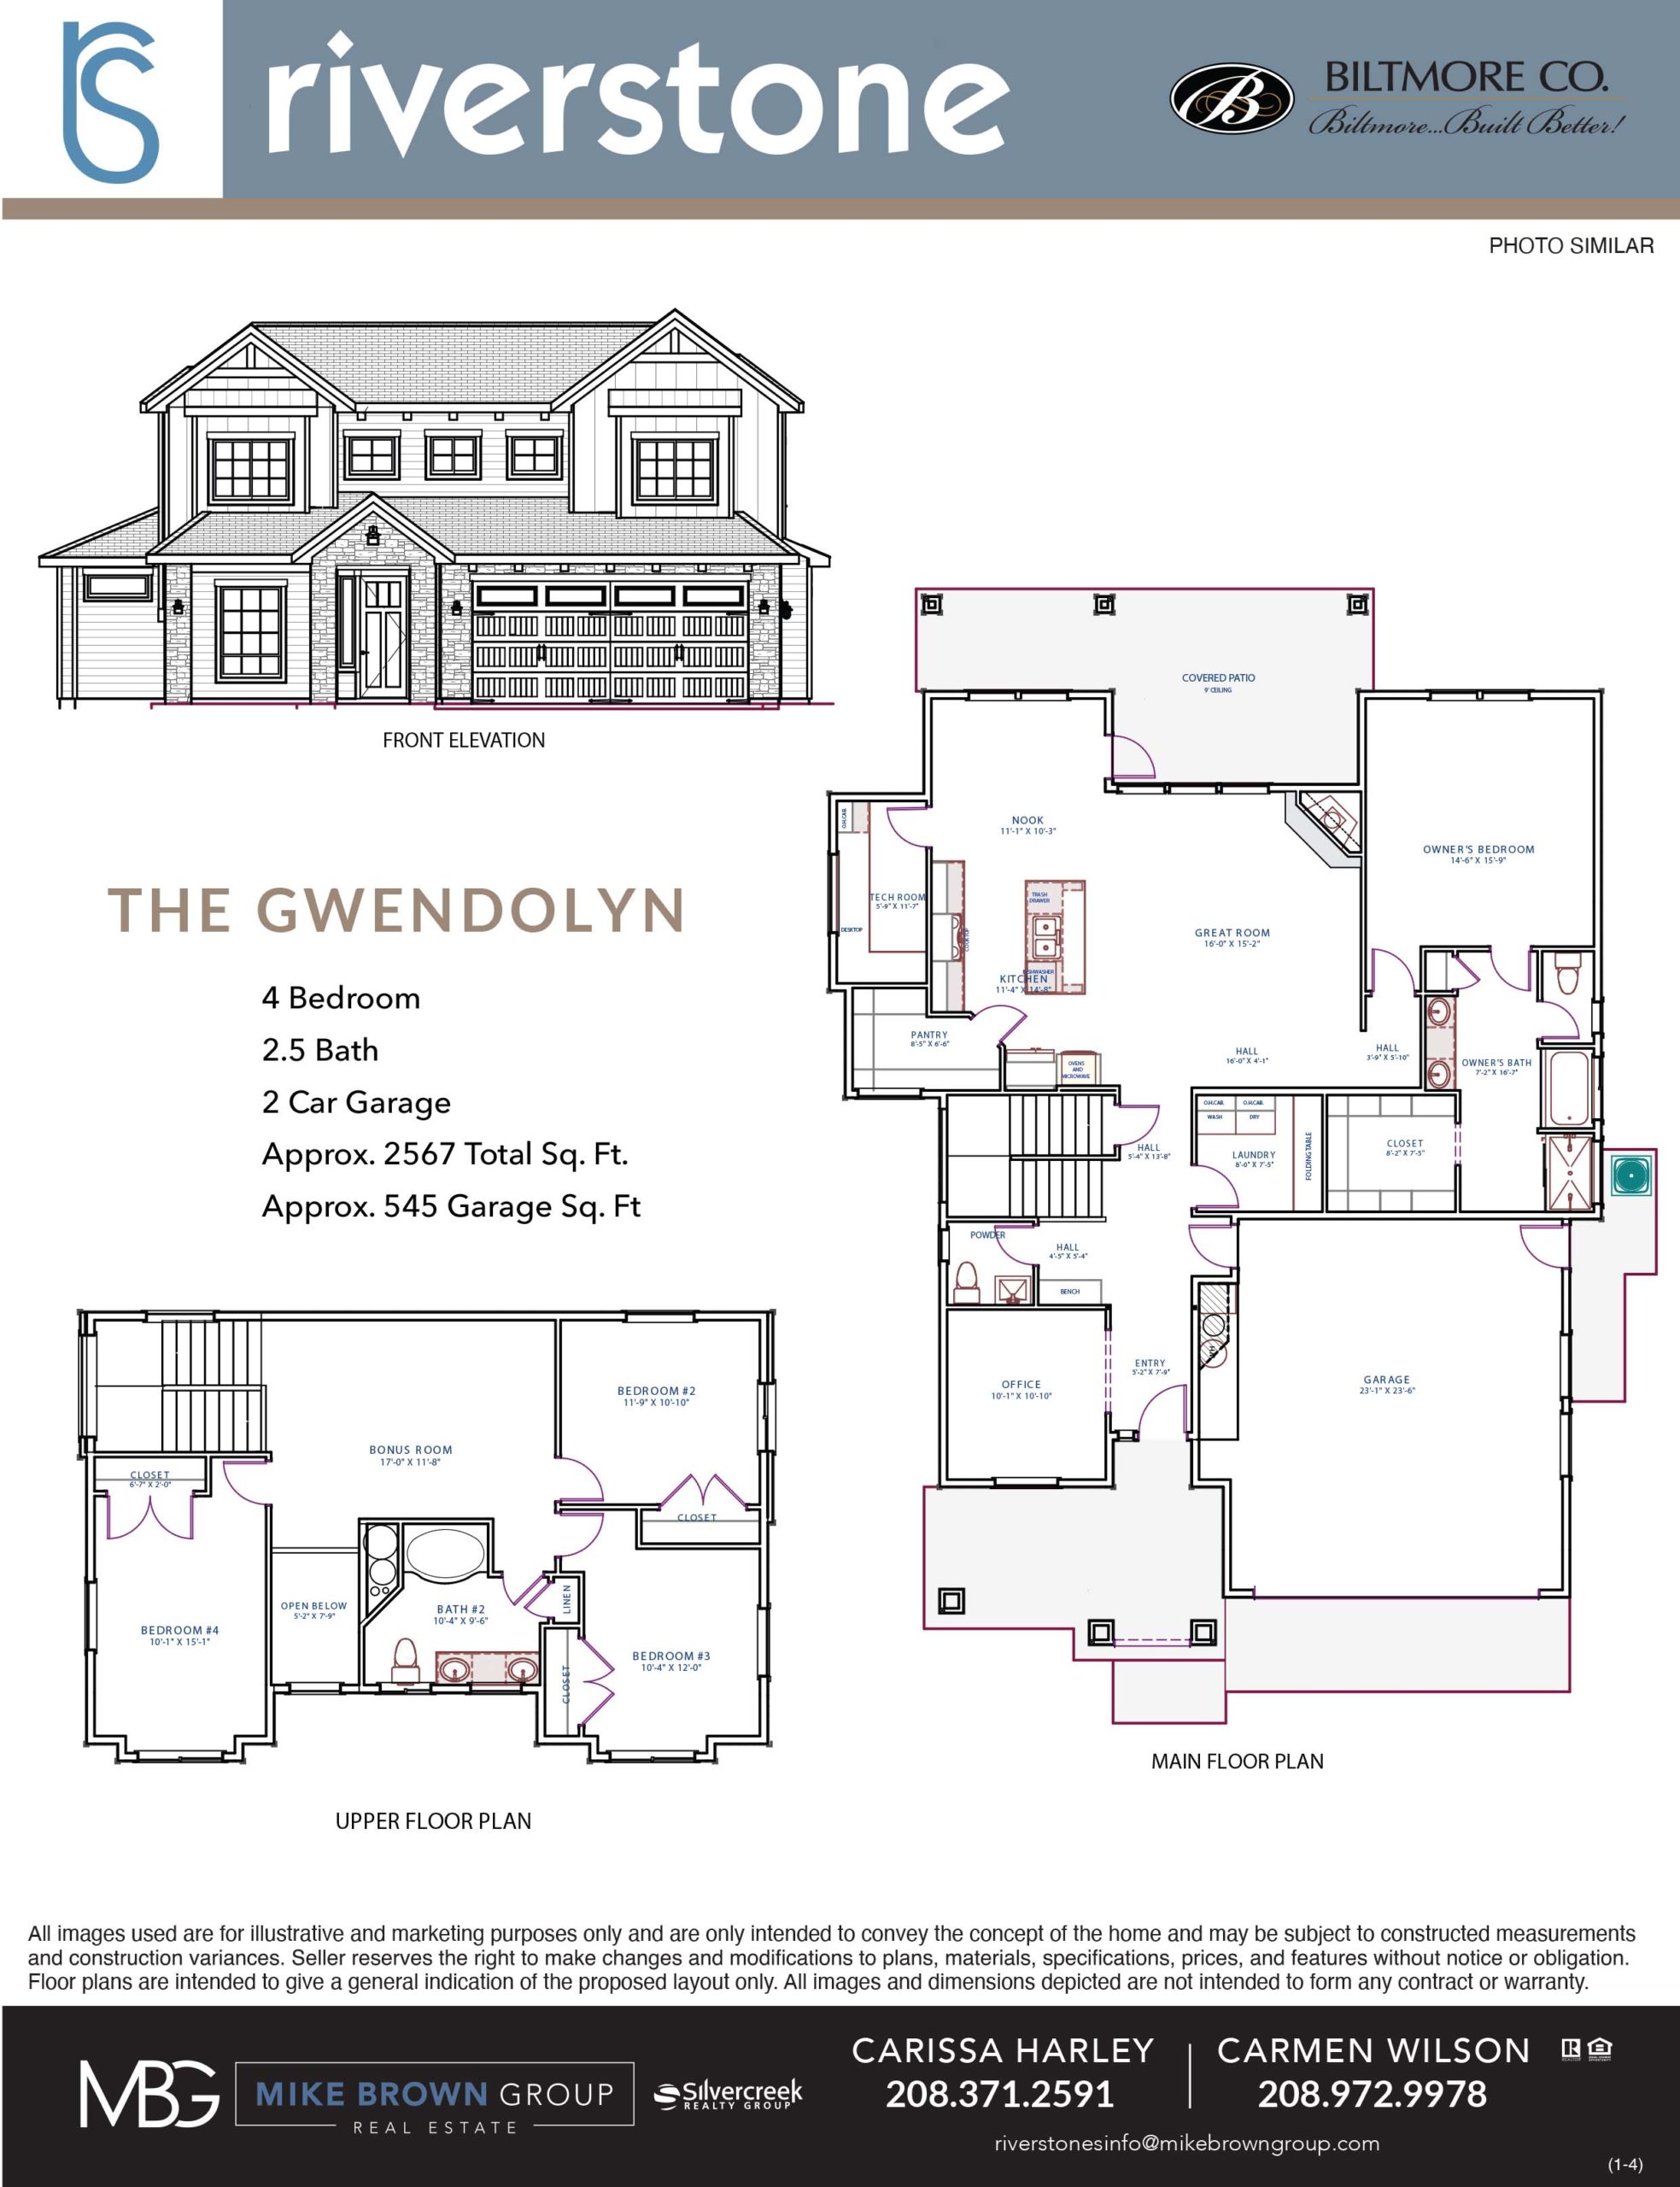 Riverstone Gwendolyn Rendering and Floorplan